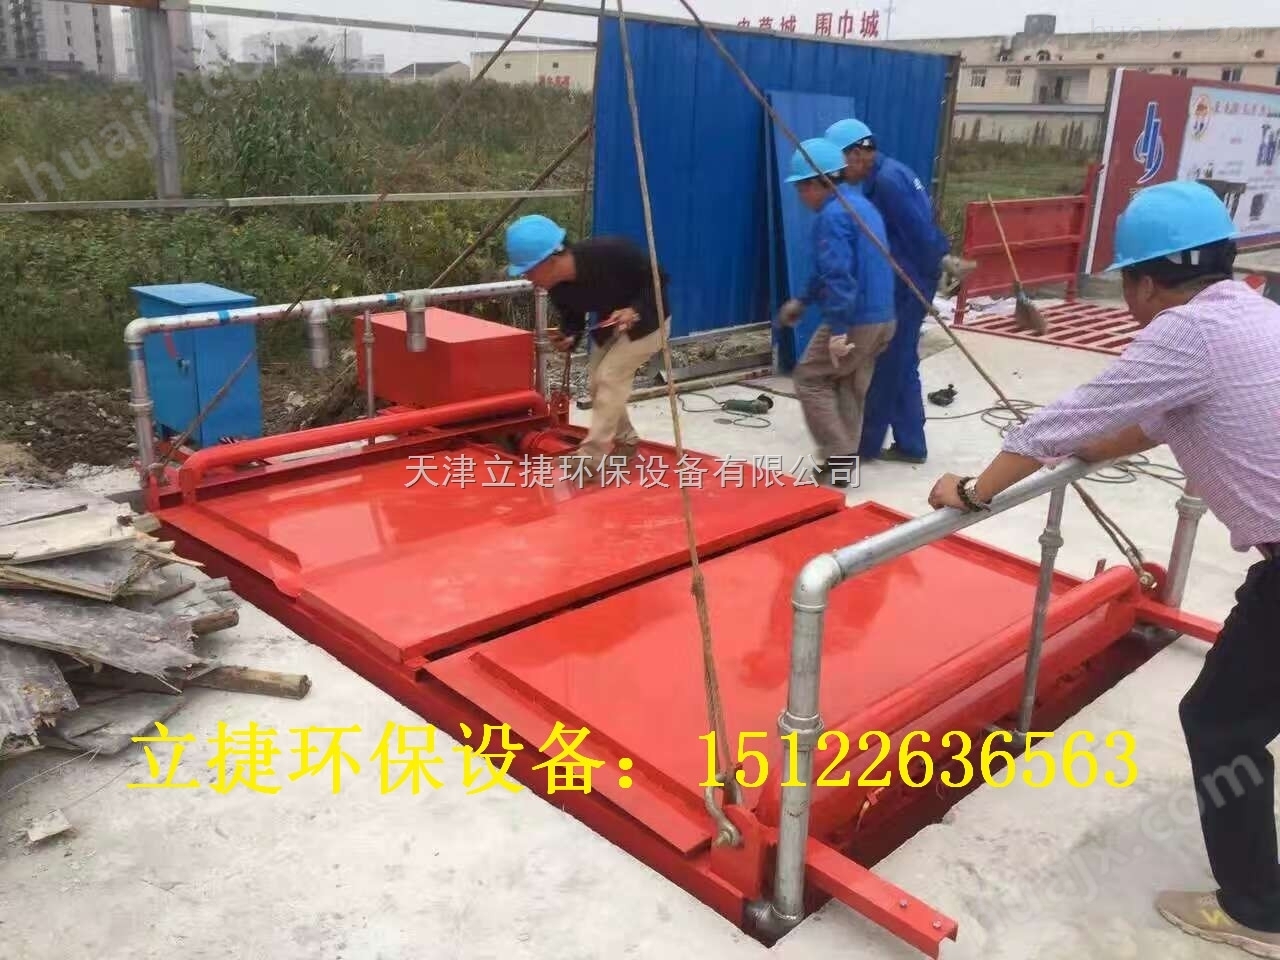 天津滨海新区基坑式滚轴洗车设备立捷jklj-110-g